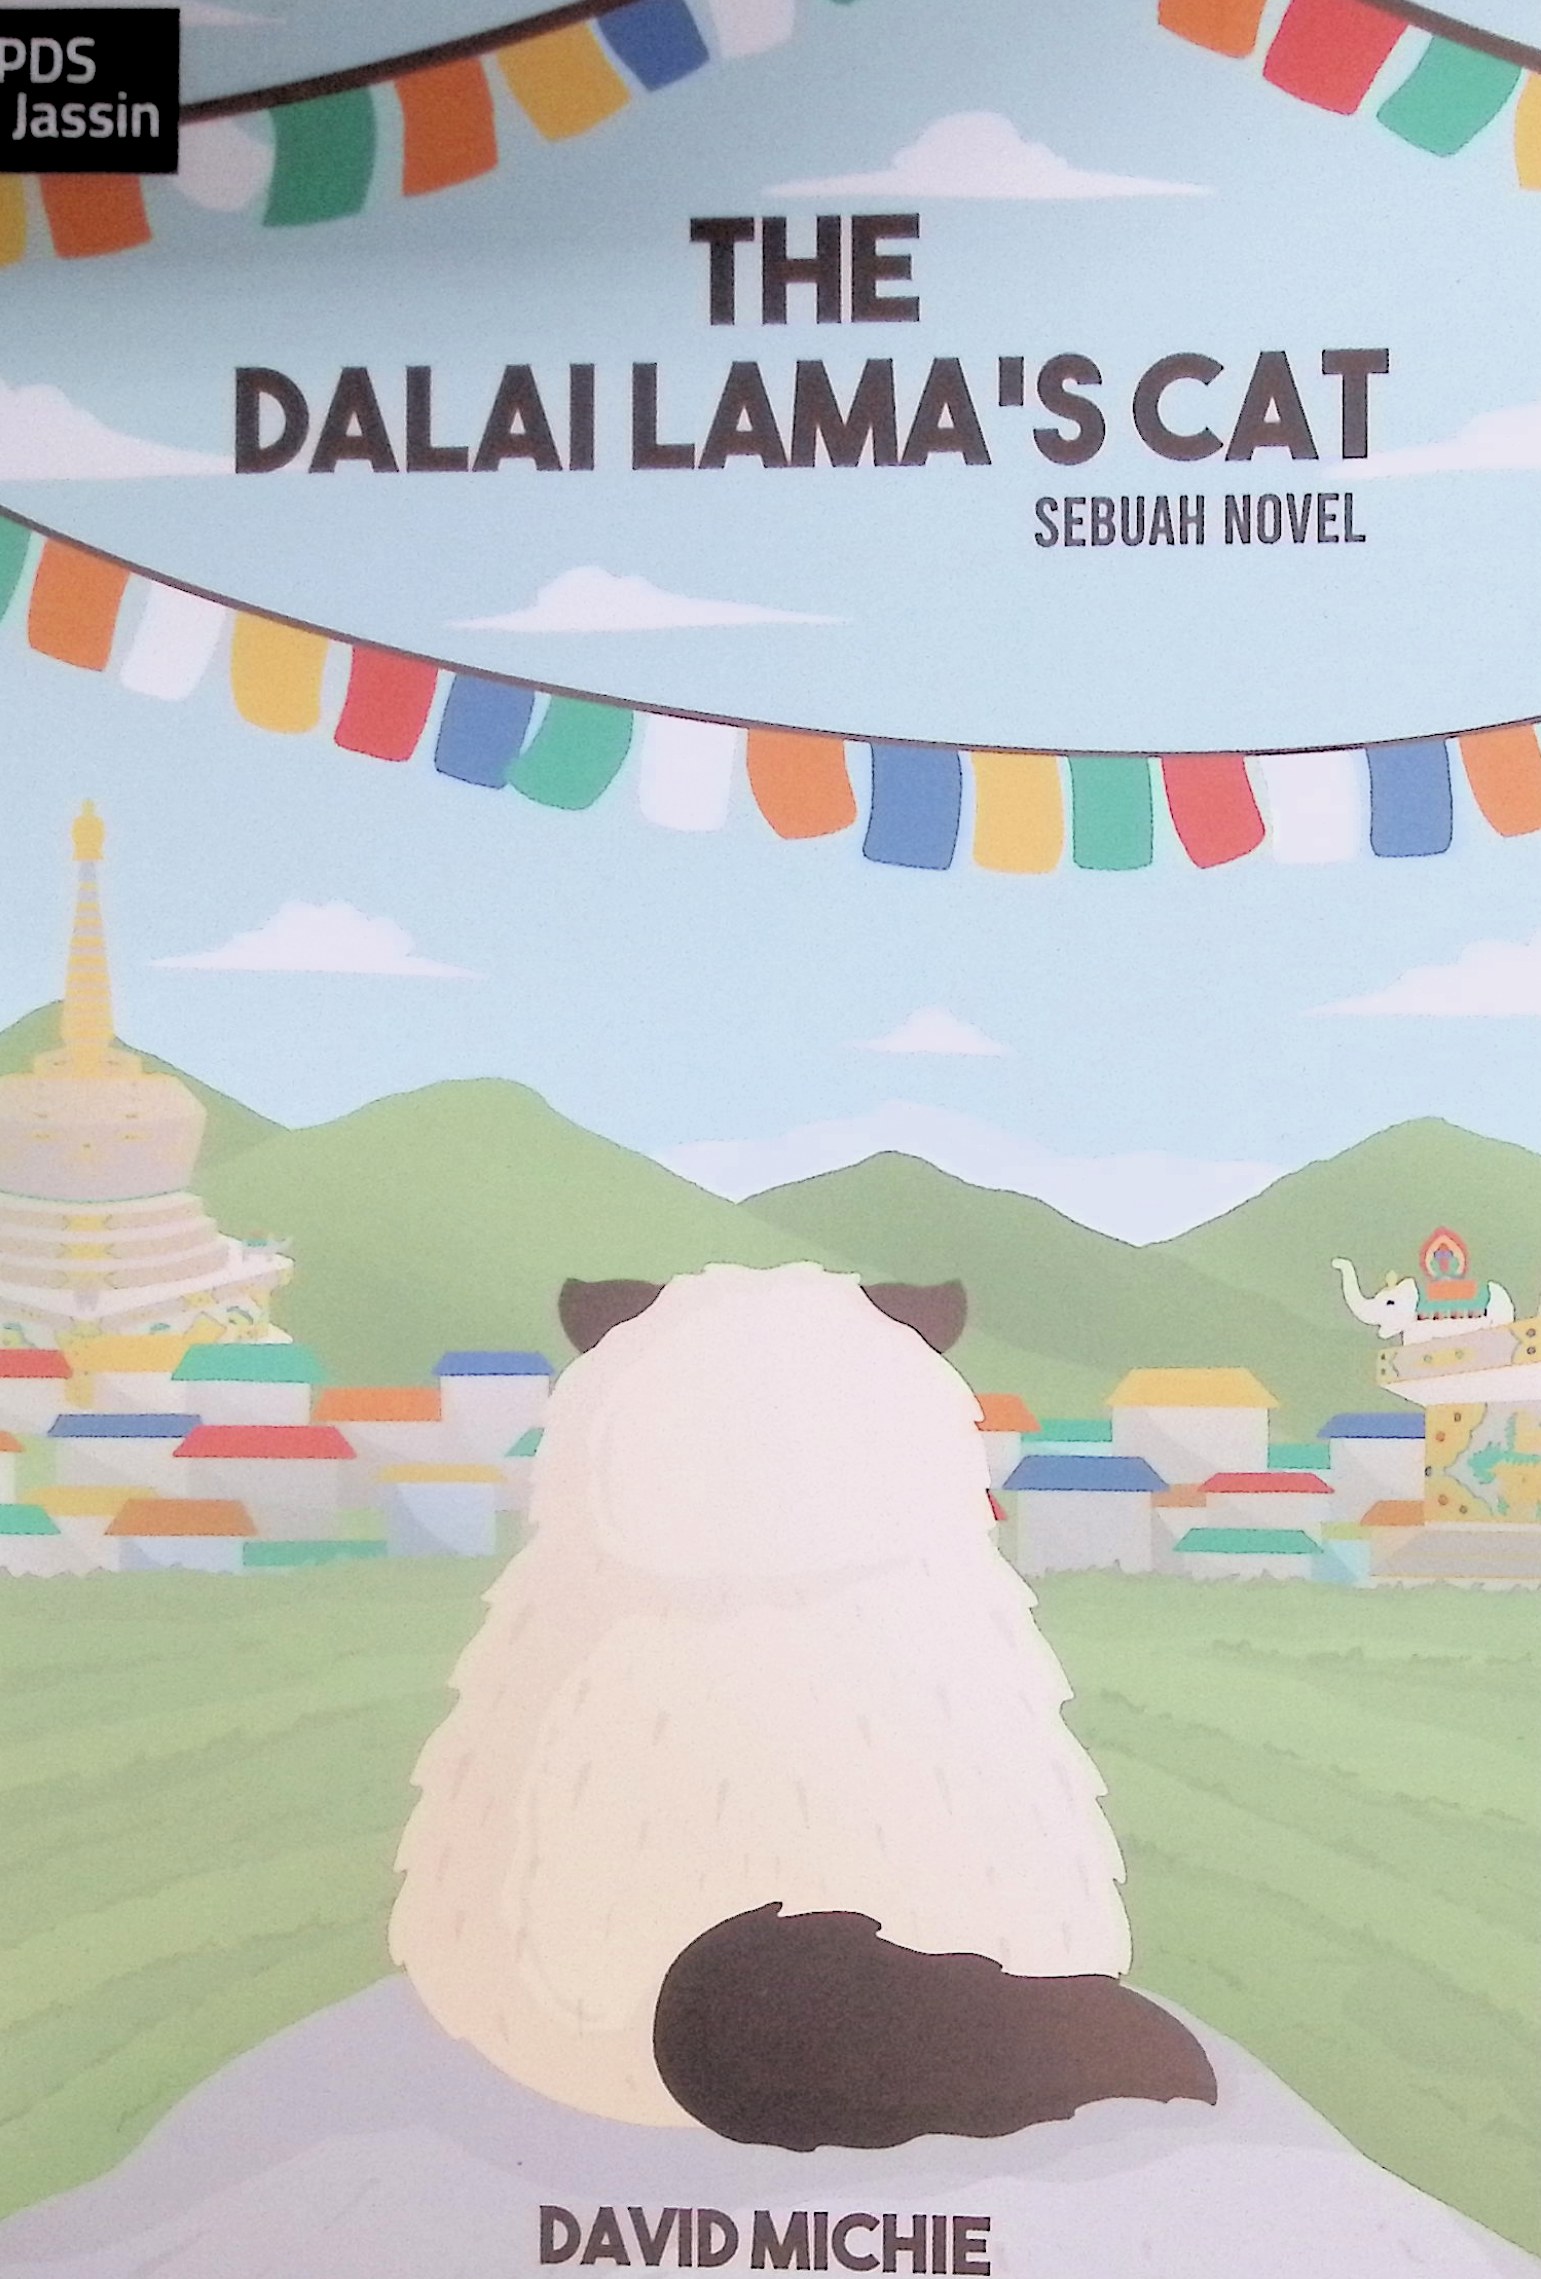 The dalai lama's cat